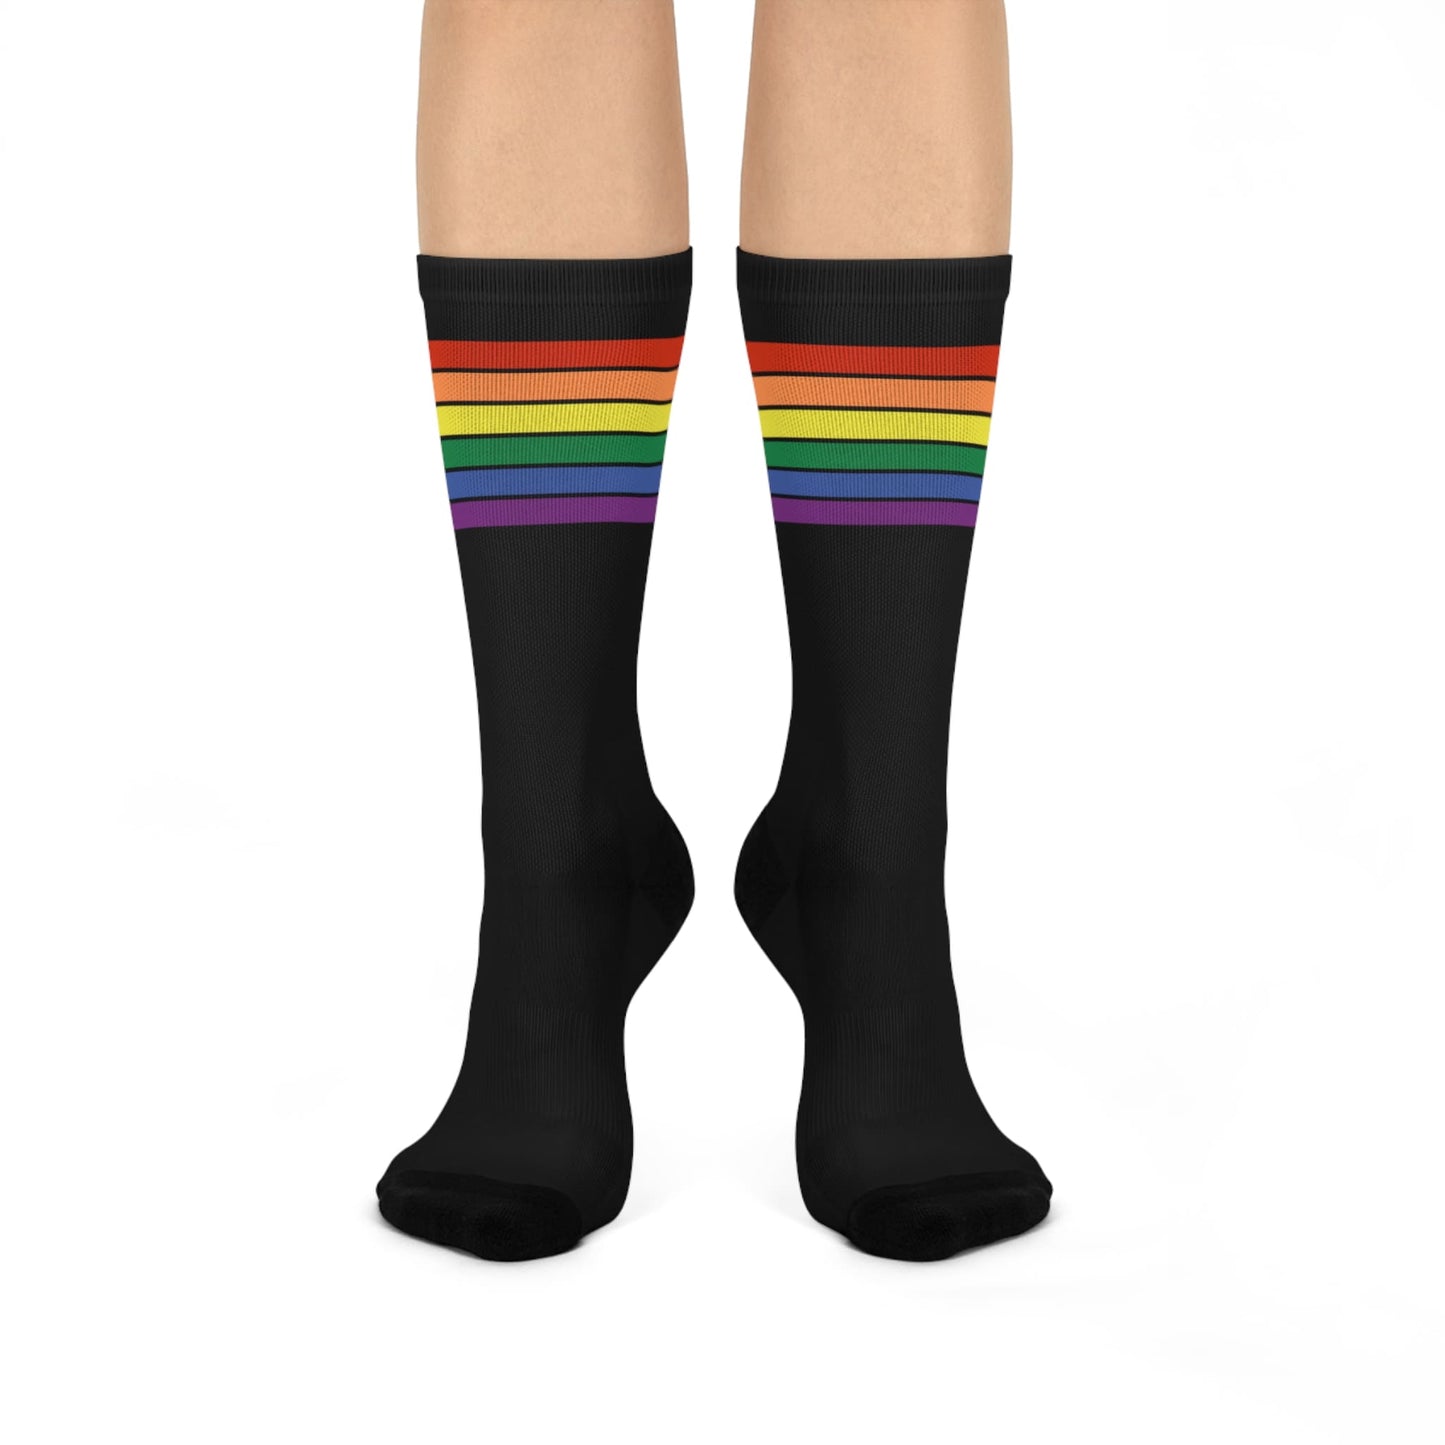 LGBT socks, LGBTQ pride flag, front